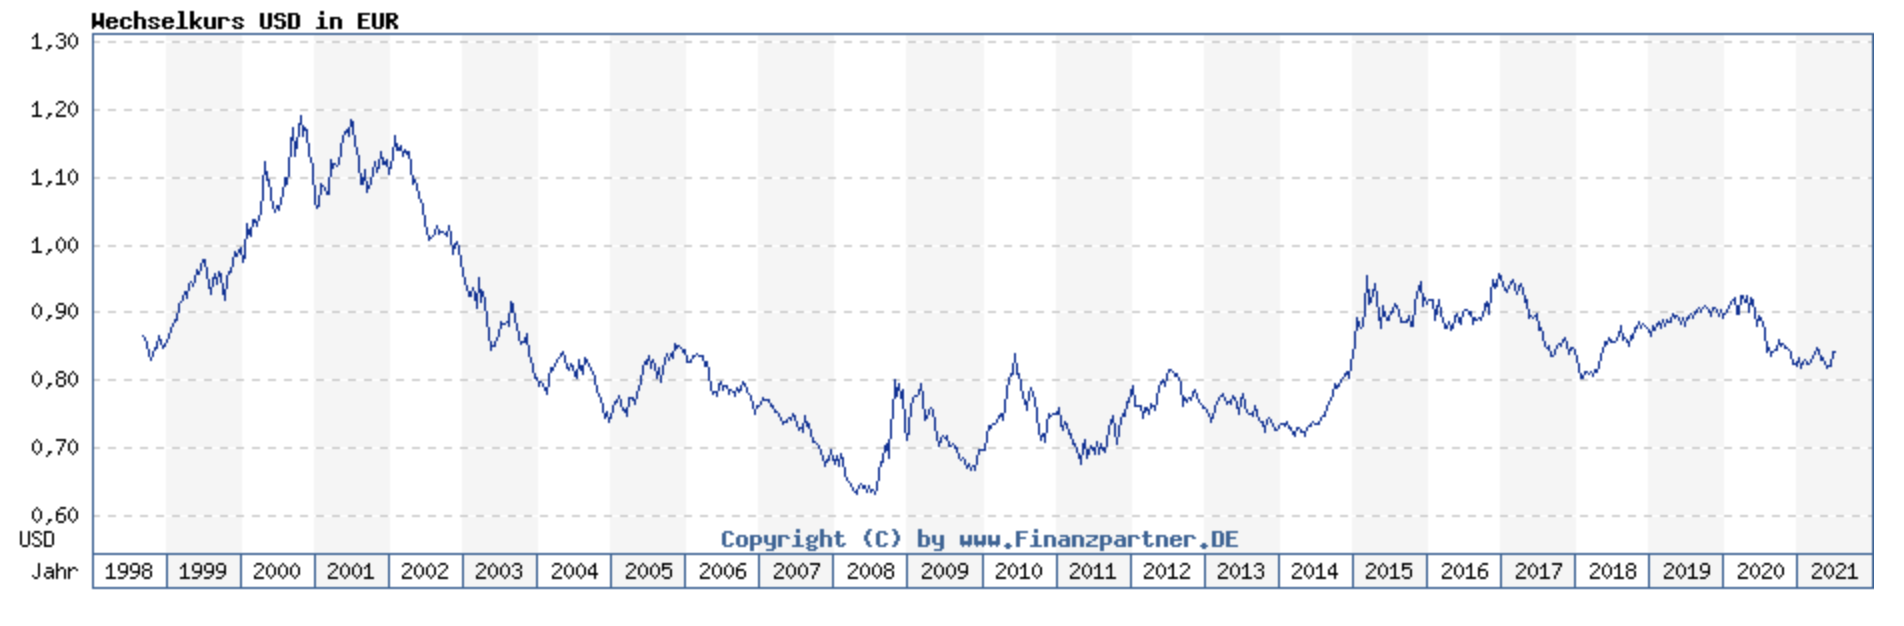 Historischer Wechselkurs USD in EUR, Grafik von finanzpartner.de